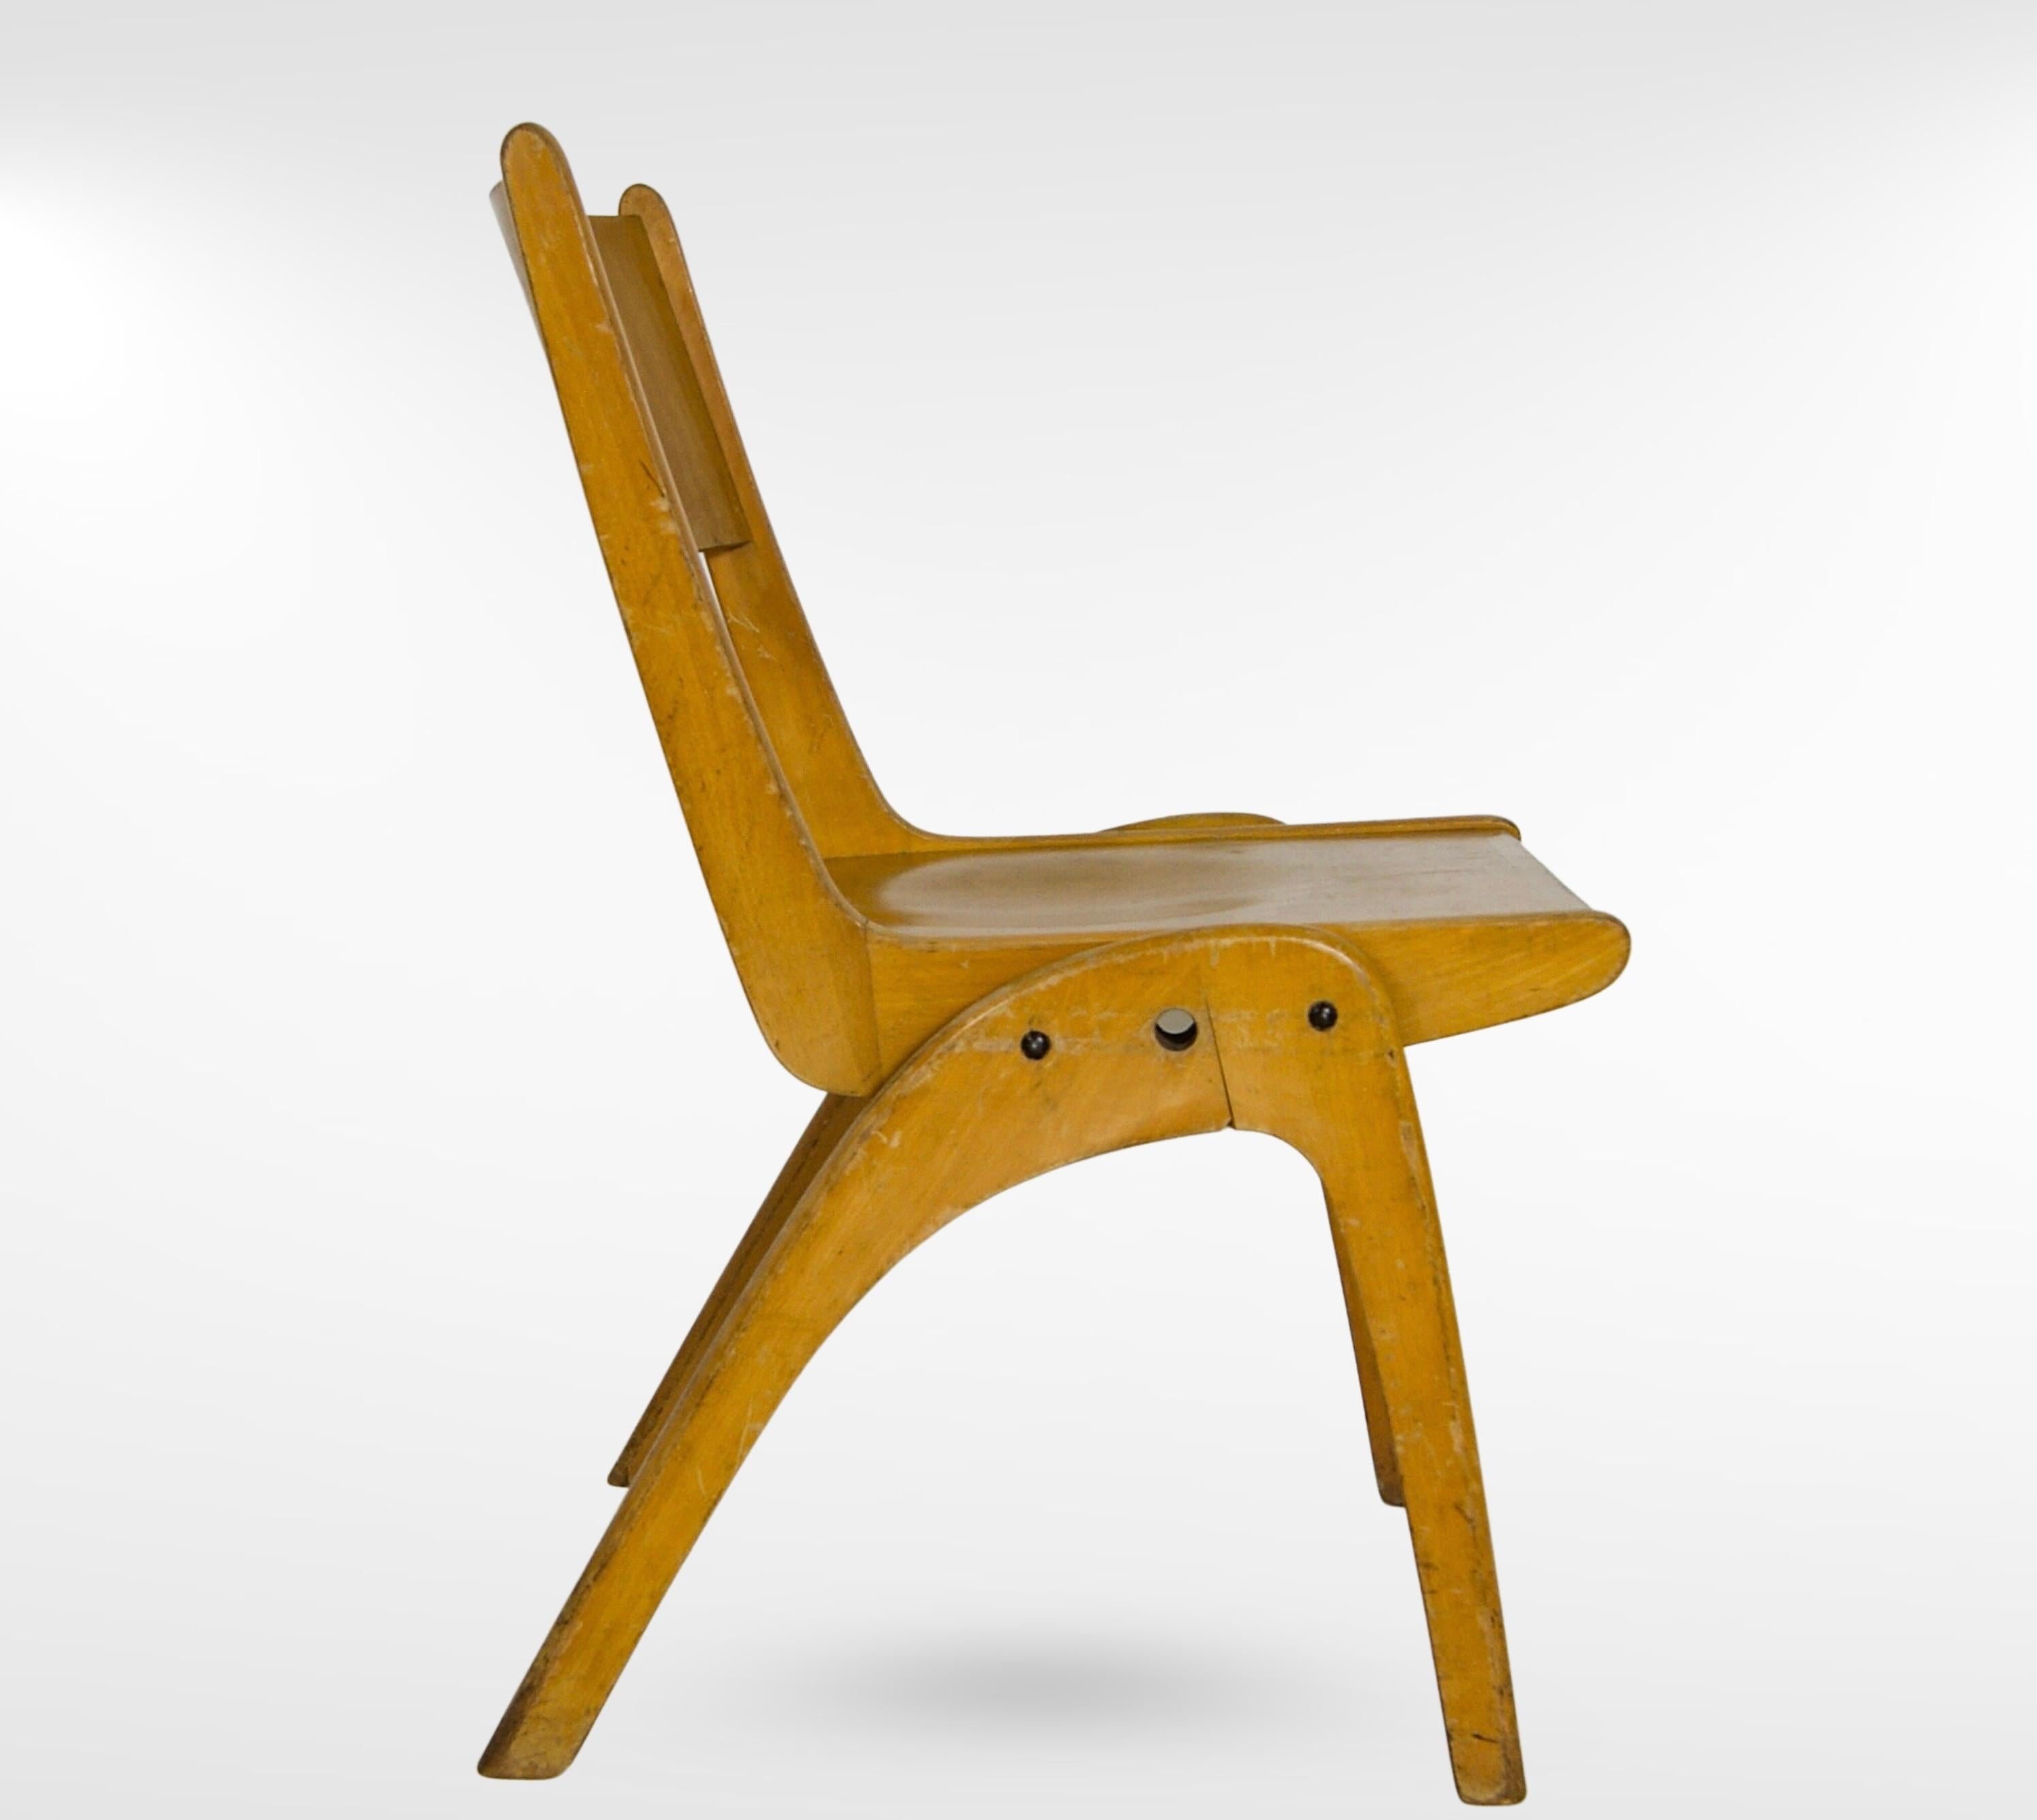 Lot de 6 chaises empilables de style Bauhaus du milieu du siècle par Muster 'Casala'.
En hêtre naturel et avec une finition d'usine de couleur beige.
Doté d'un généreux dossier arrondi profond et incurvé pour plus de confort.
La surface d'assise est